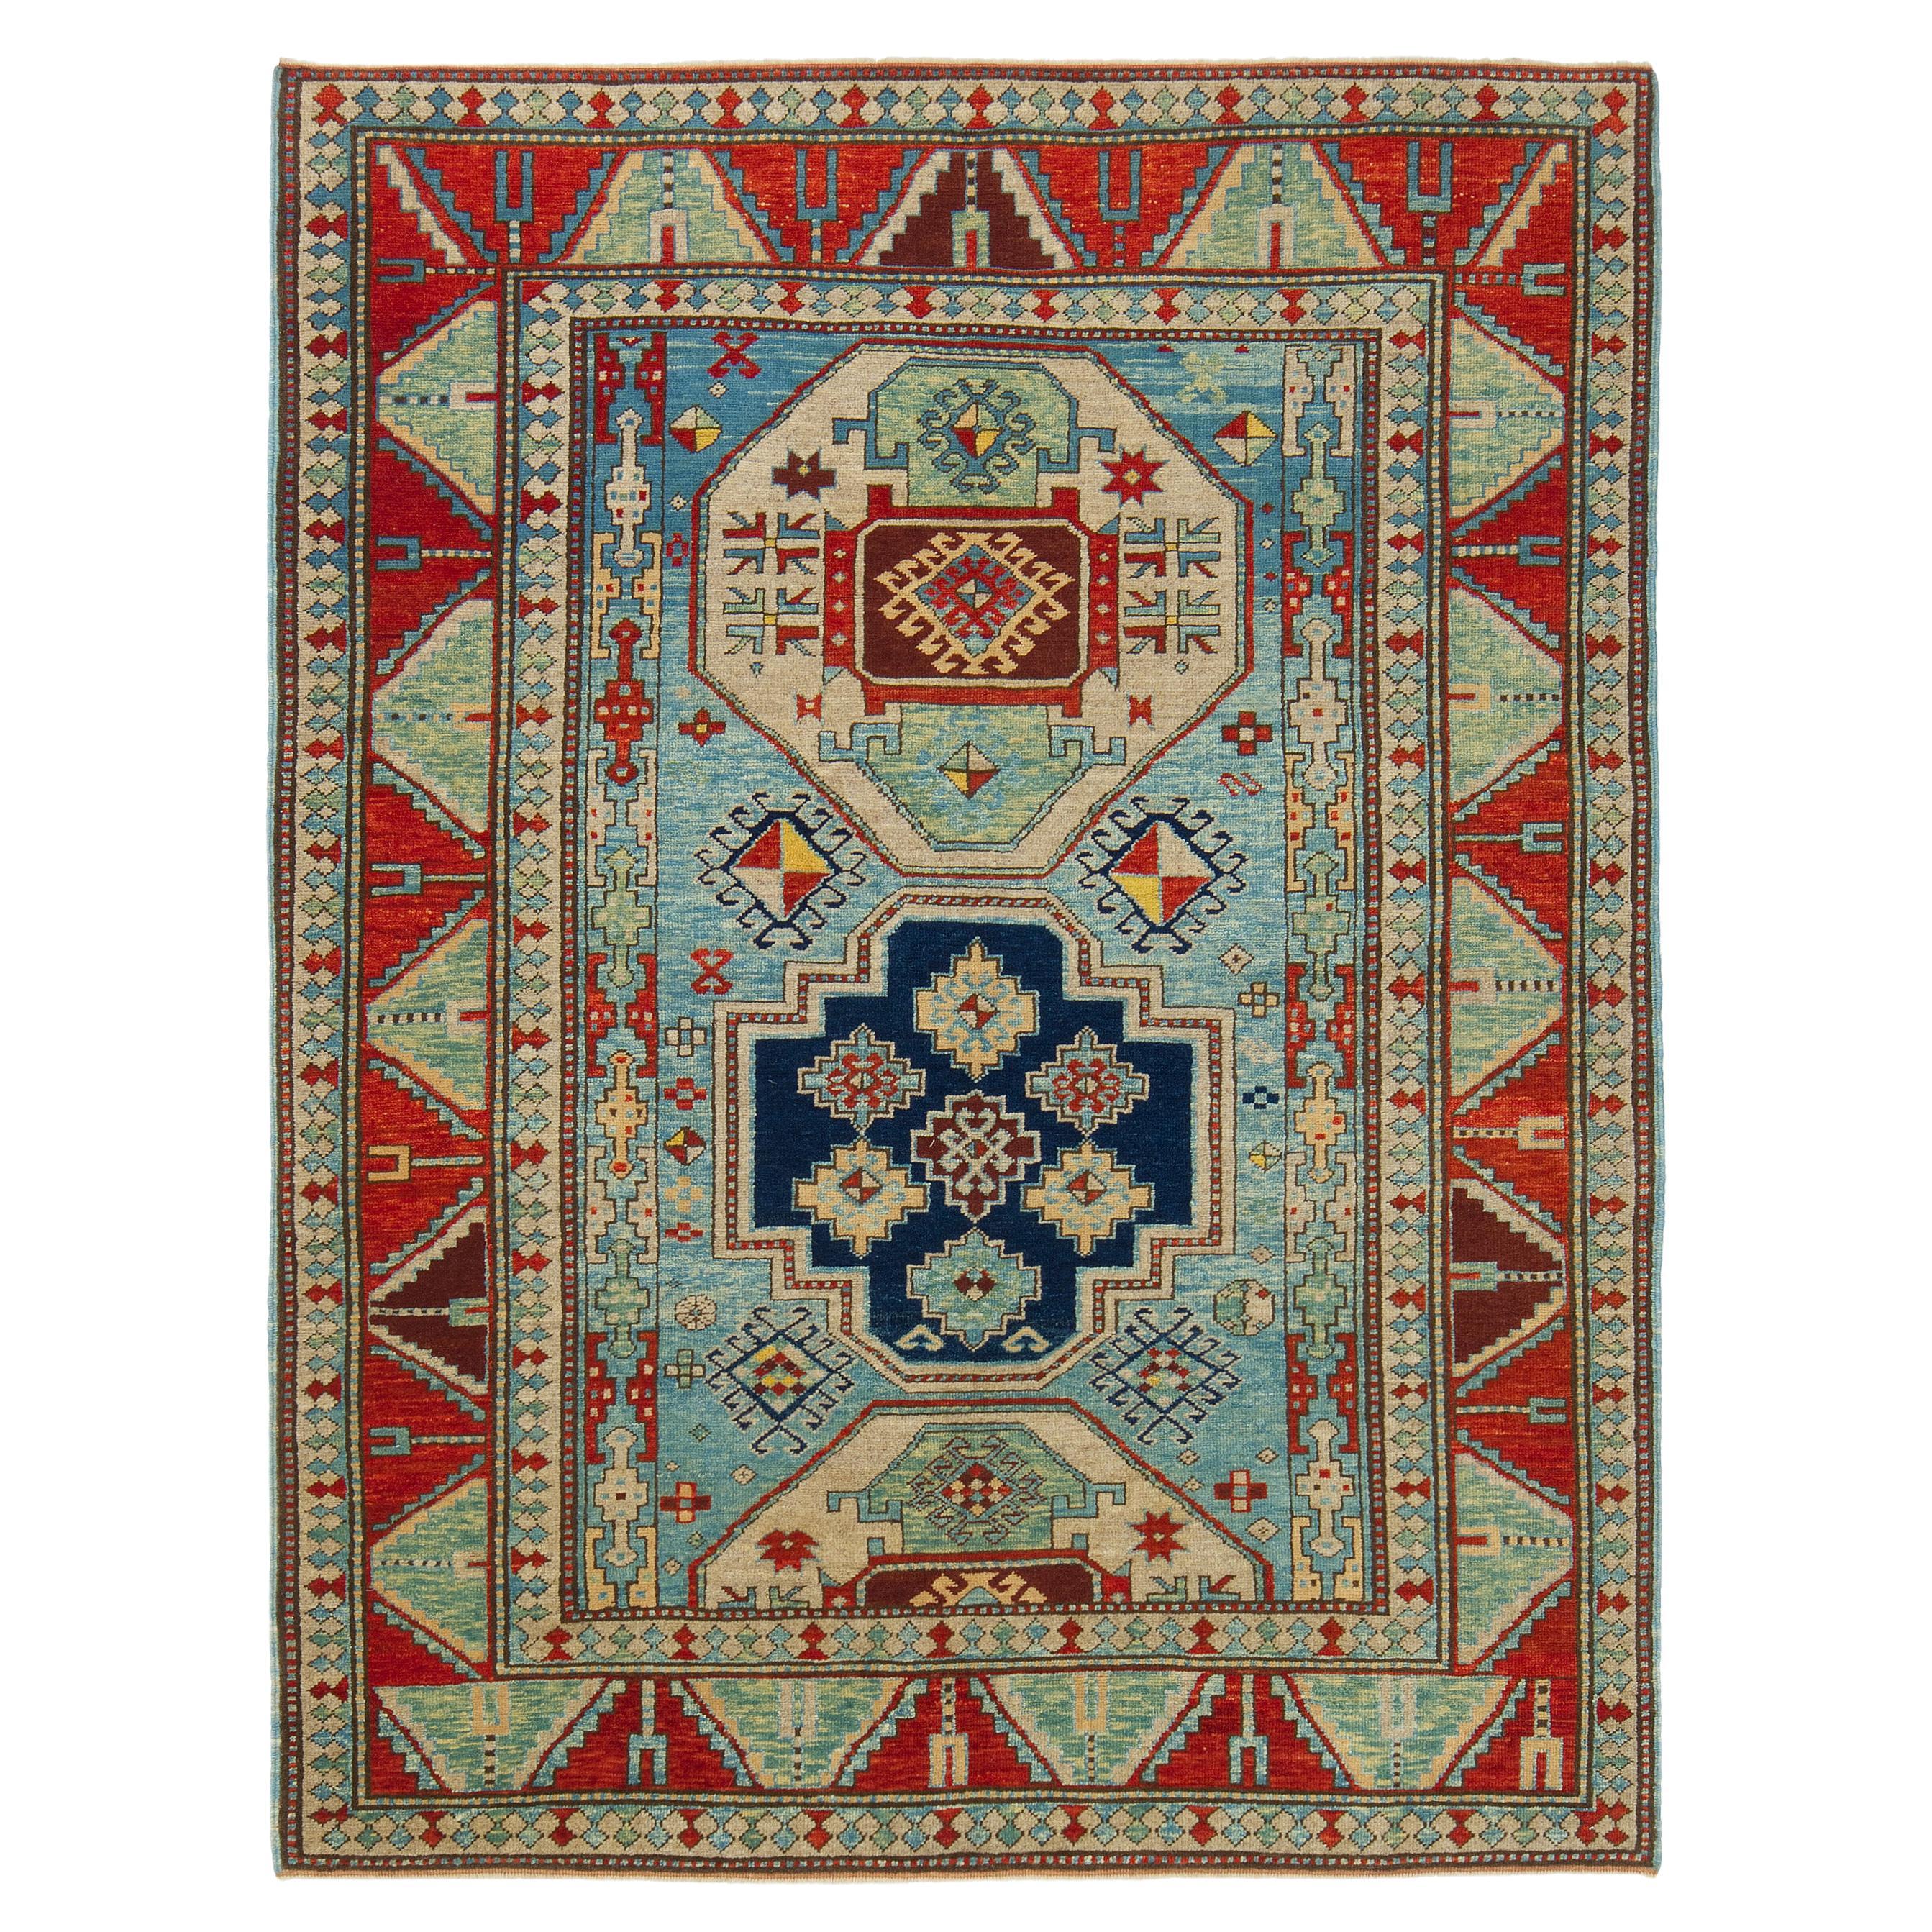 Ararat Rugs Lori Pambak Kazak Rug, 19th C Caucasus Revival Carpet Natural Dyed For Sale